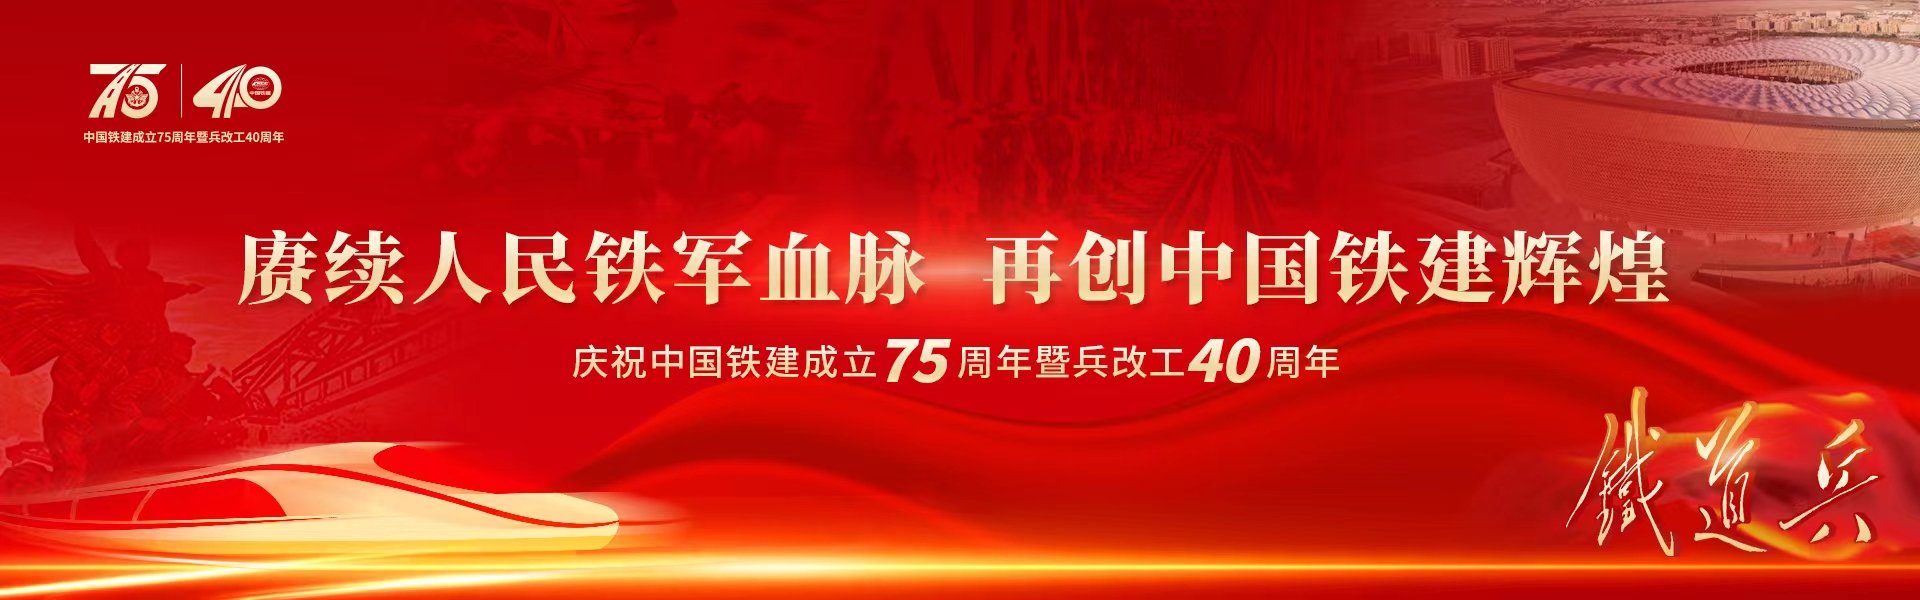 中國鐵建成立75周年暨兵改工40周年